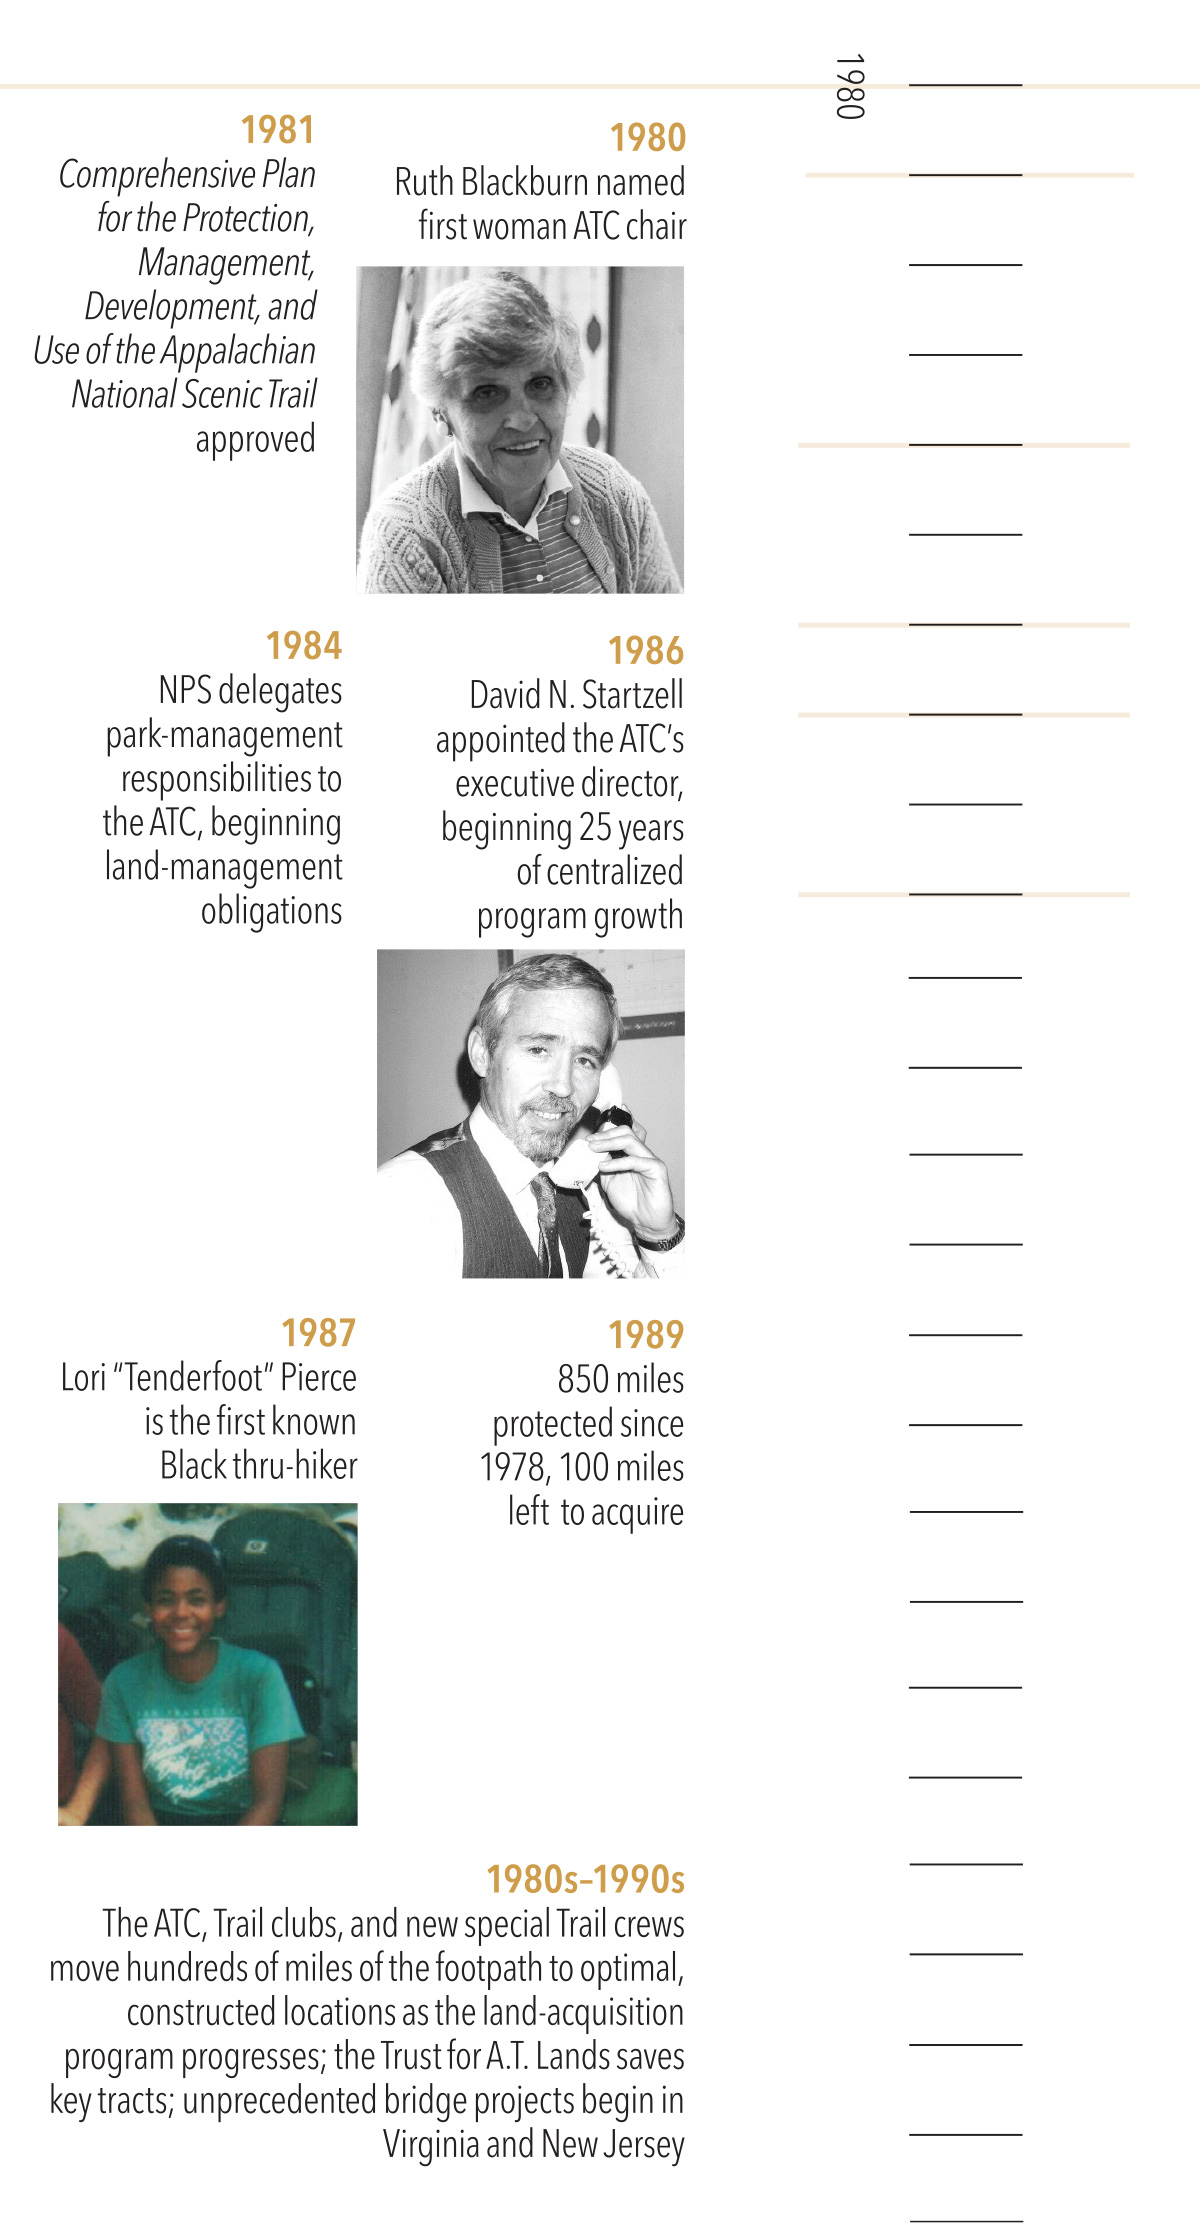 1980-1990 timeline